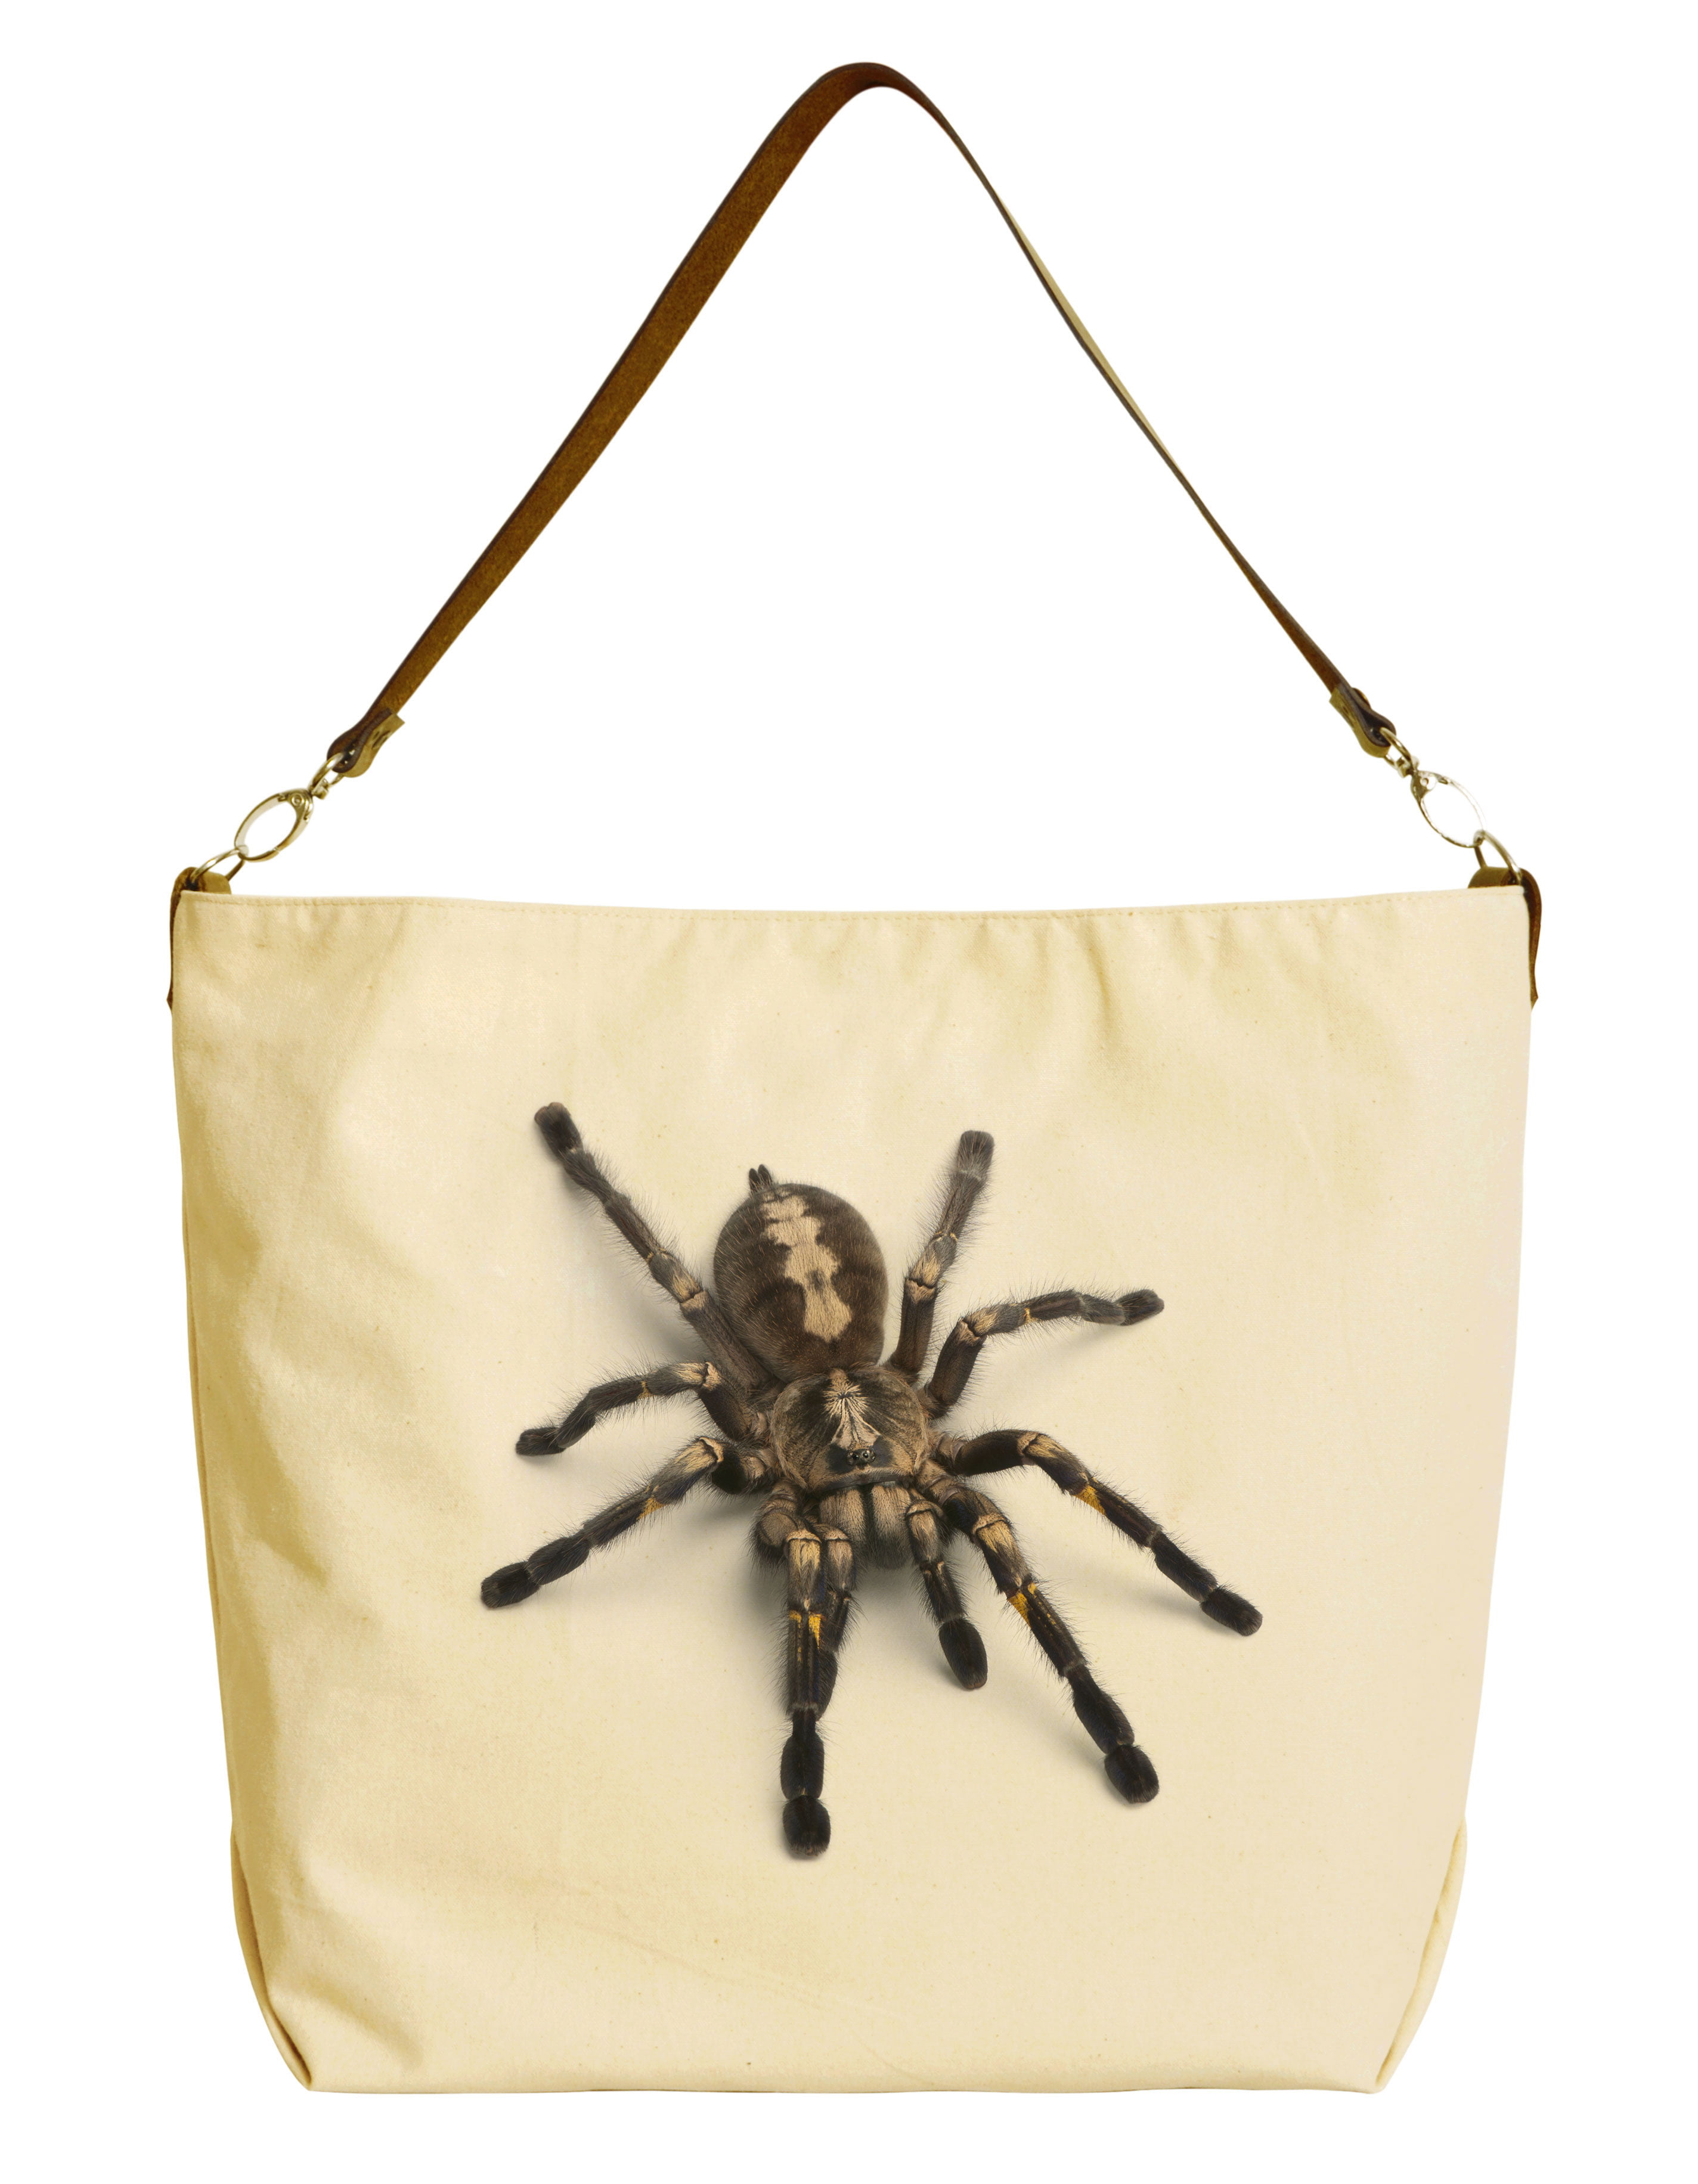 Tarantula Spider Backpack Laptop Backpack for Women Men Computer Bag Travel Daypack 